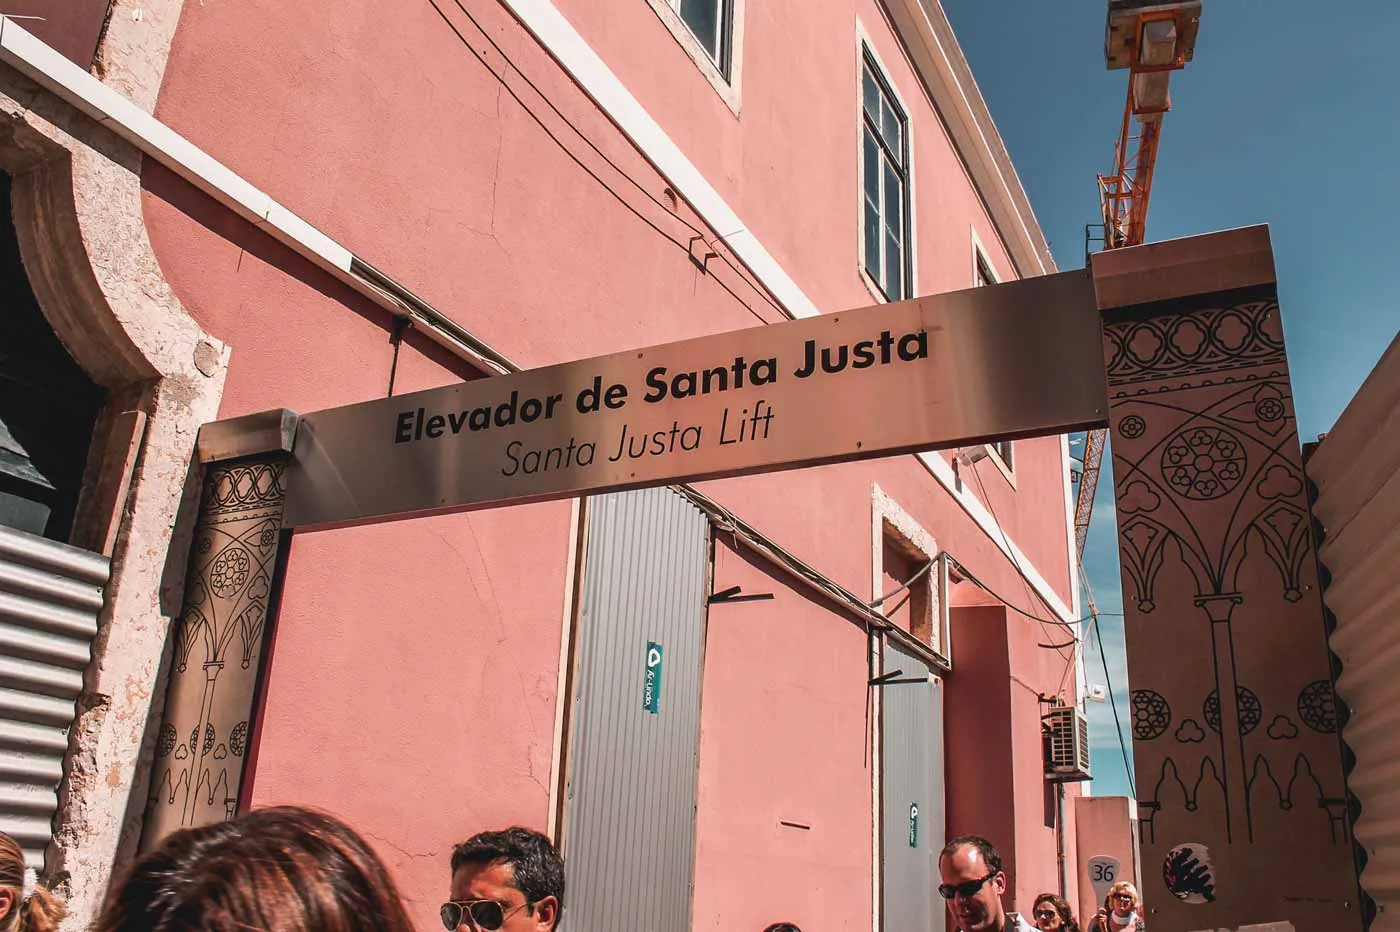 Placa da entrada do Elevador da Santa Justa em Lisboa